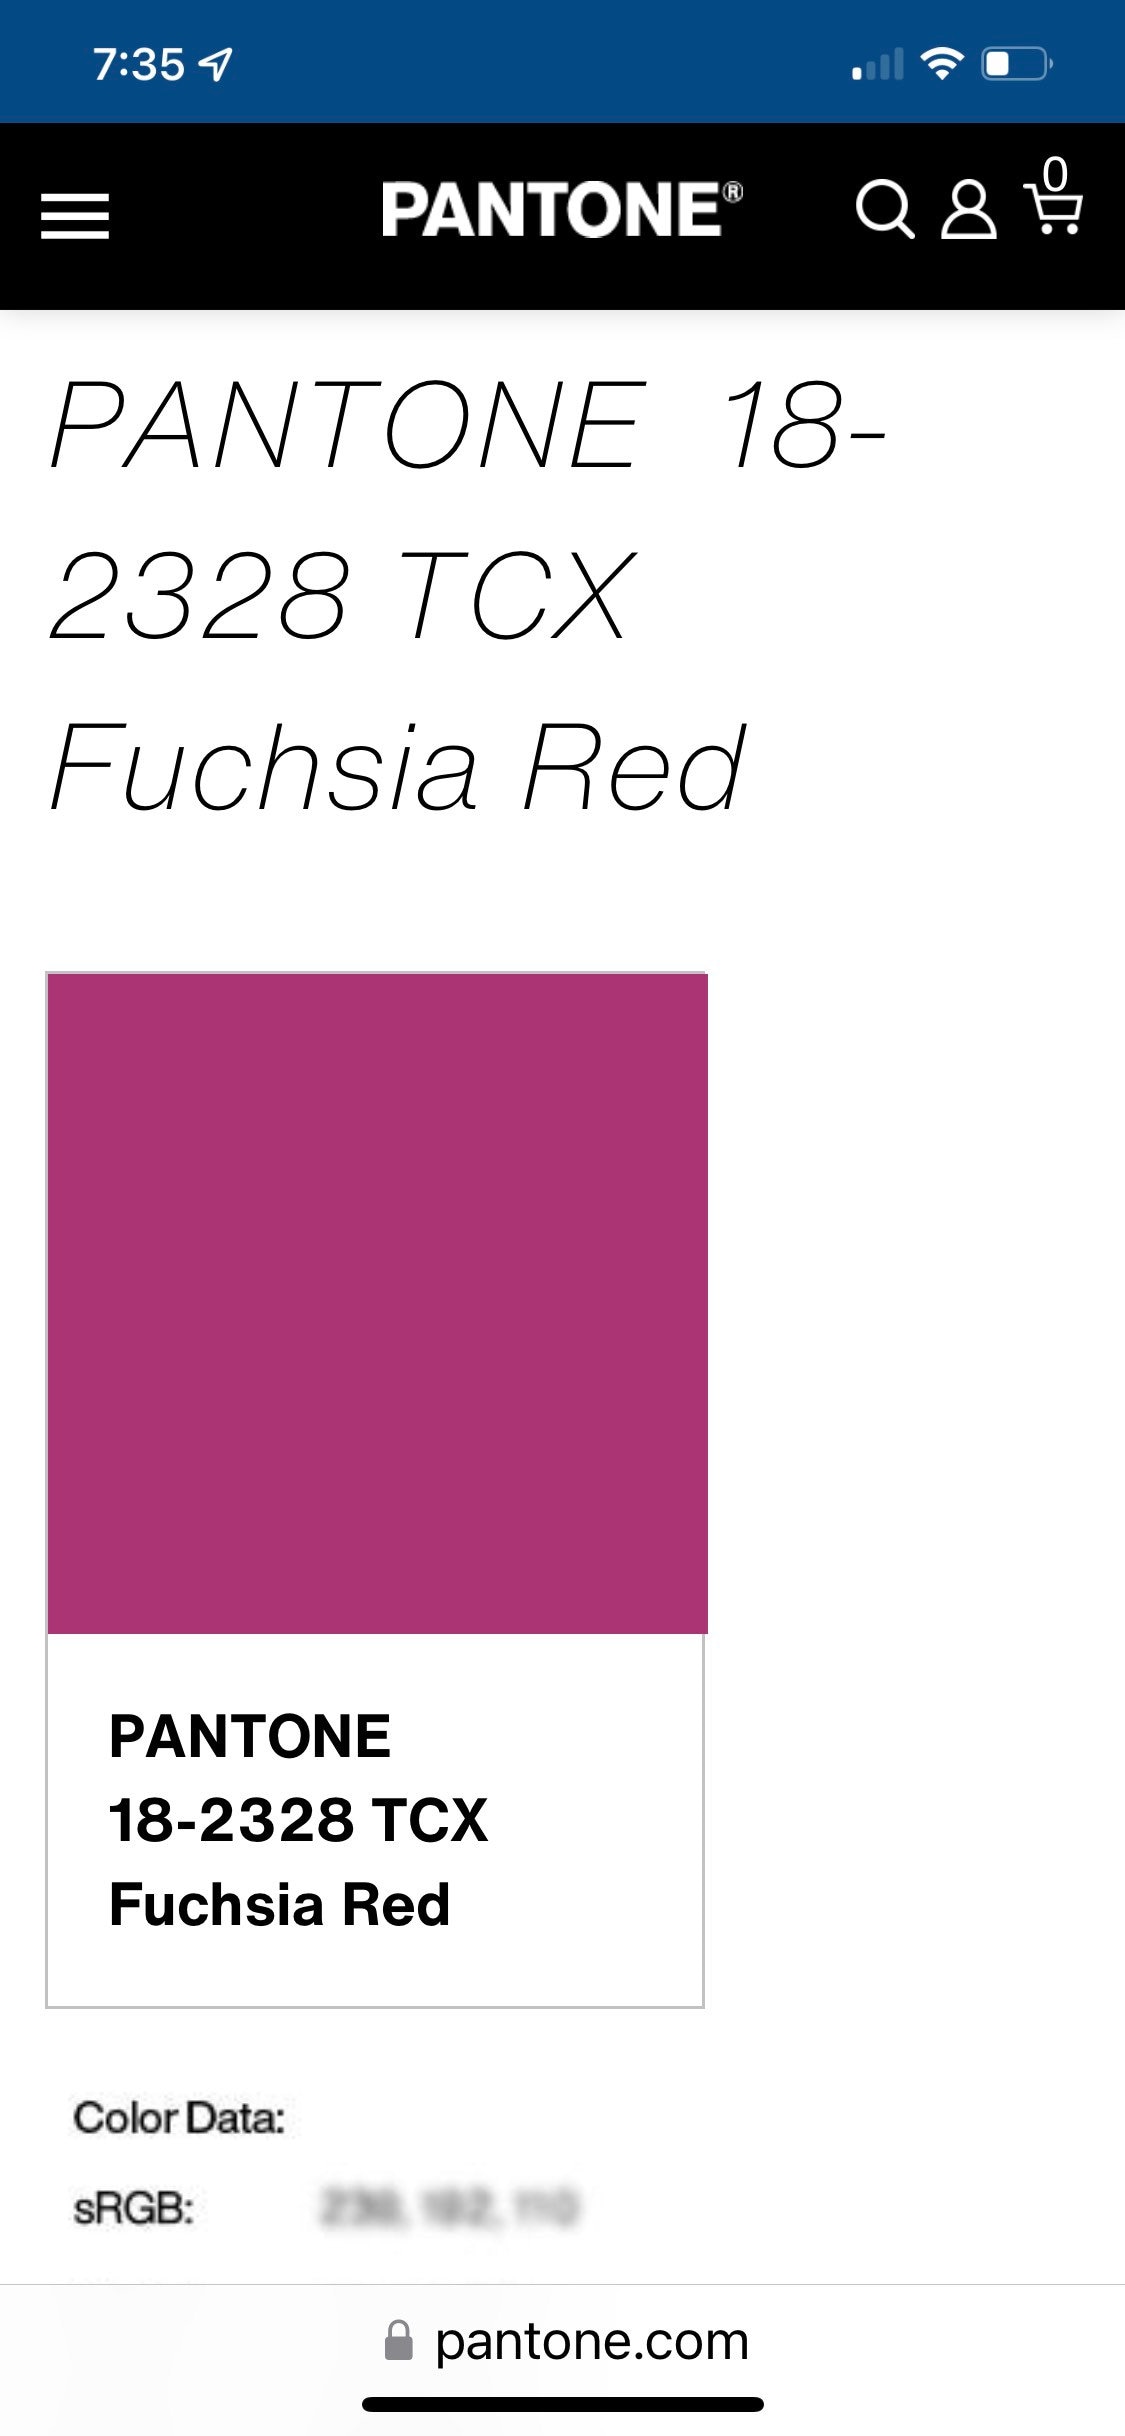 hane Bemyndige Tag ud Mystical Goth Pink Fuschia Red Pantone 18-2328 Flocked - Etsy